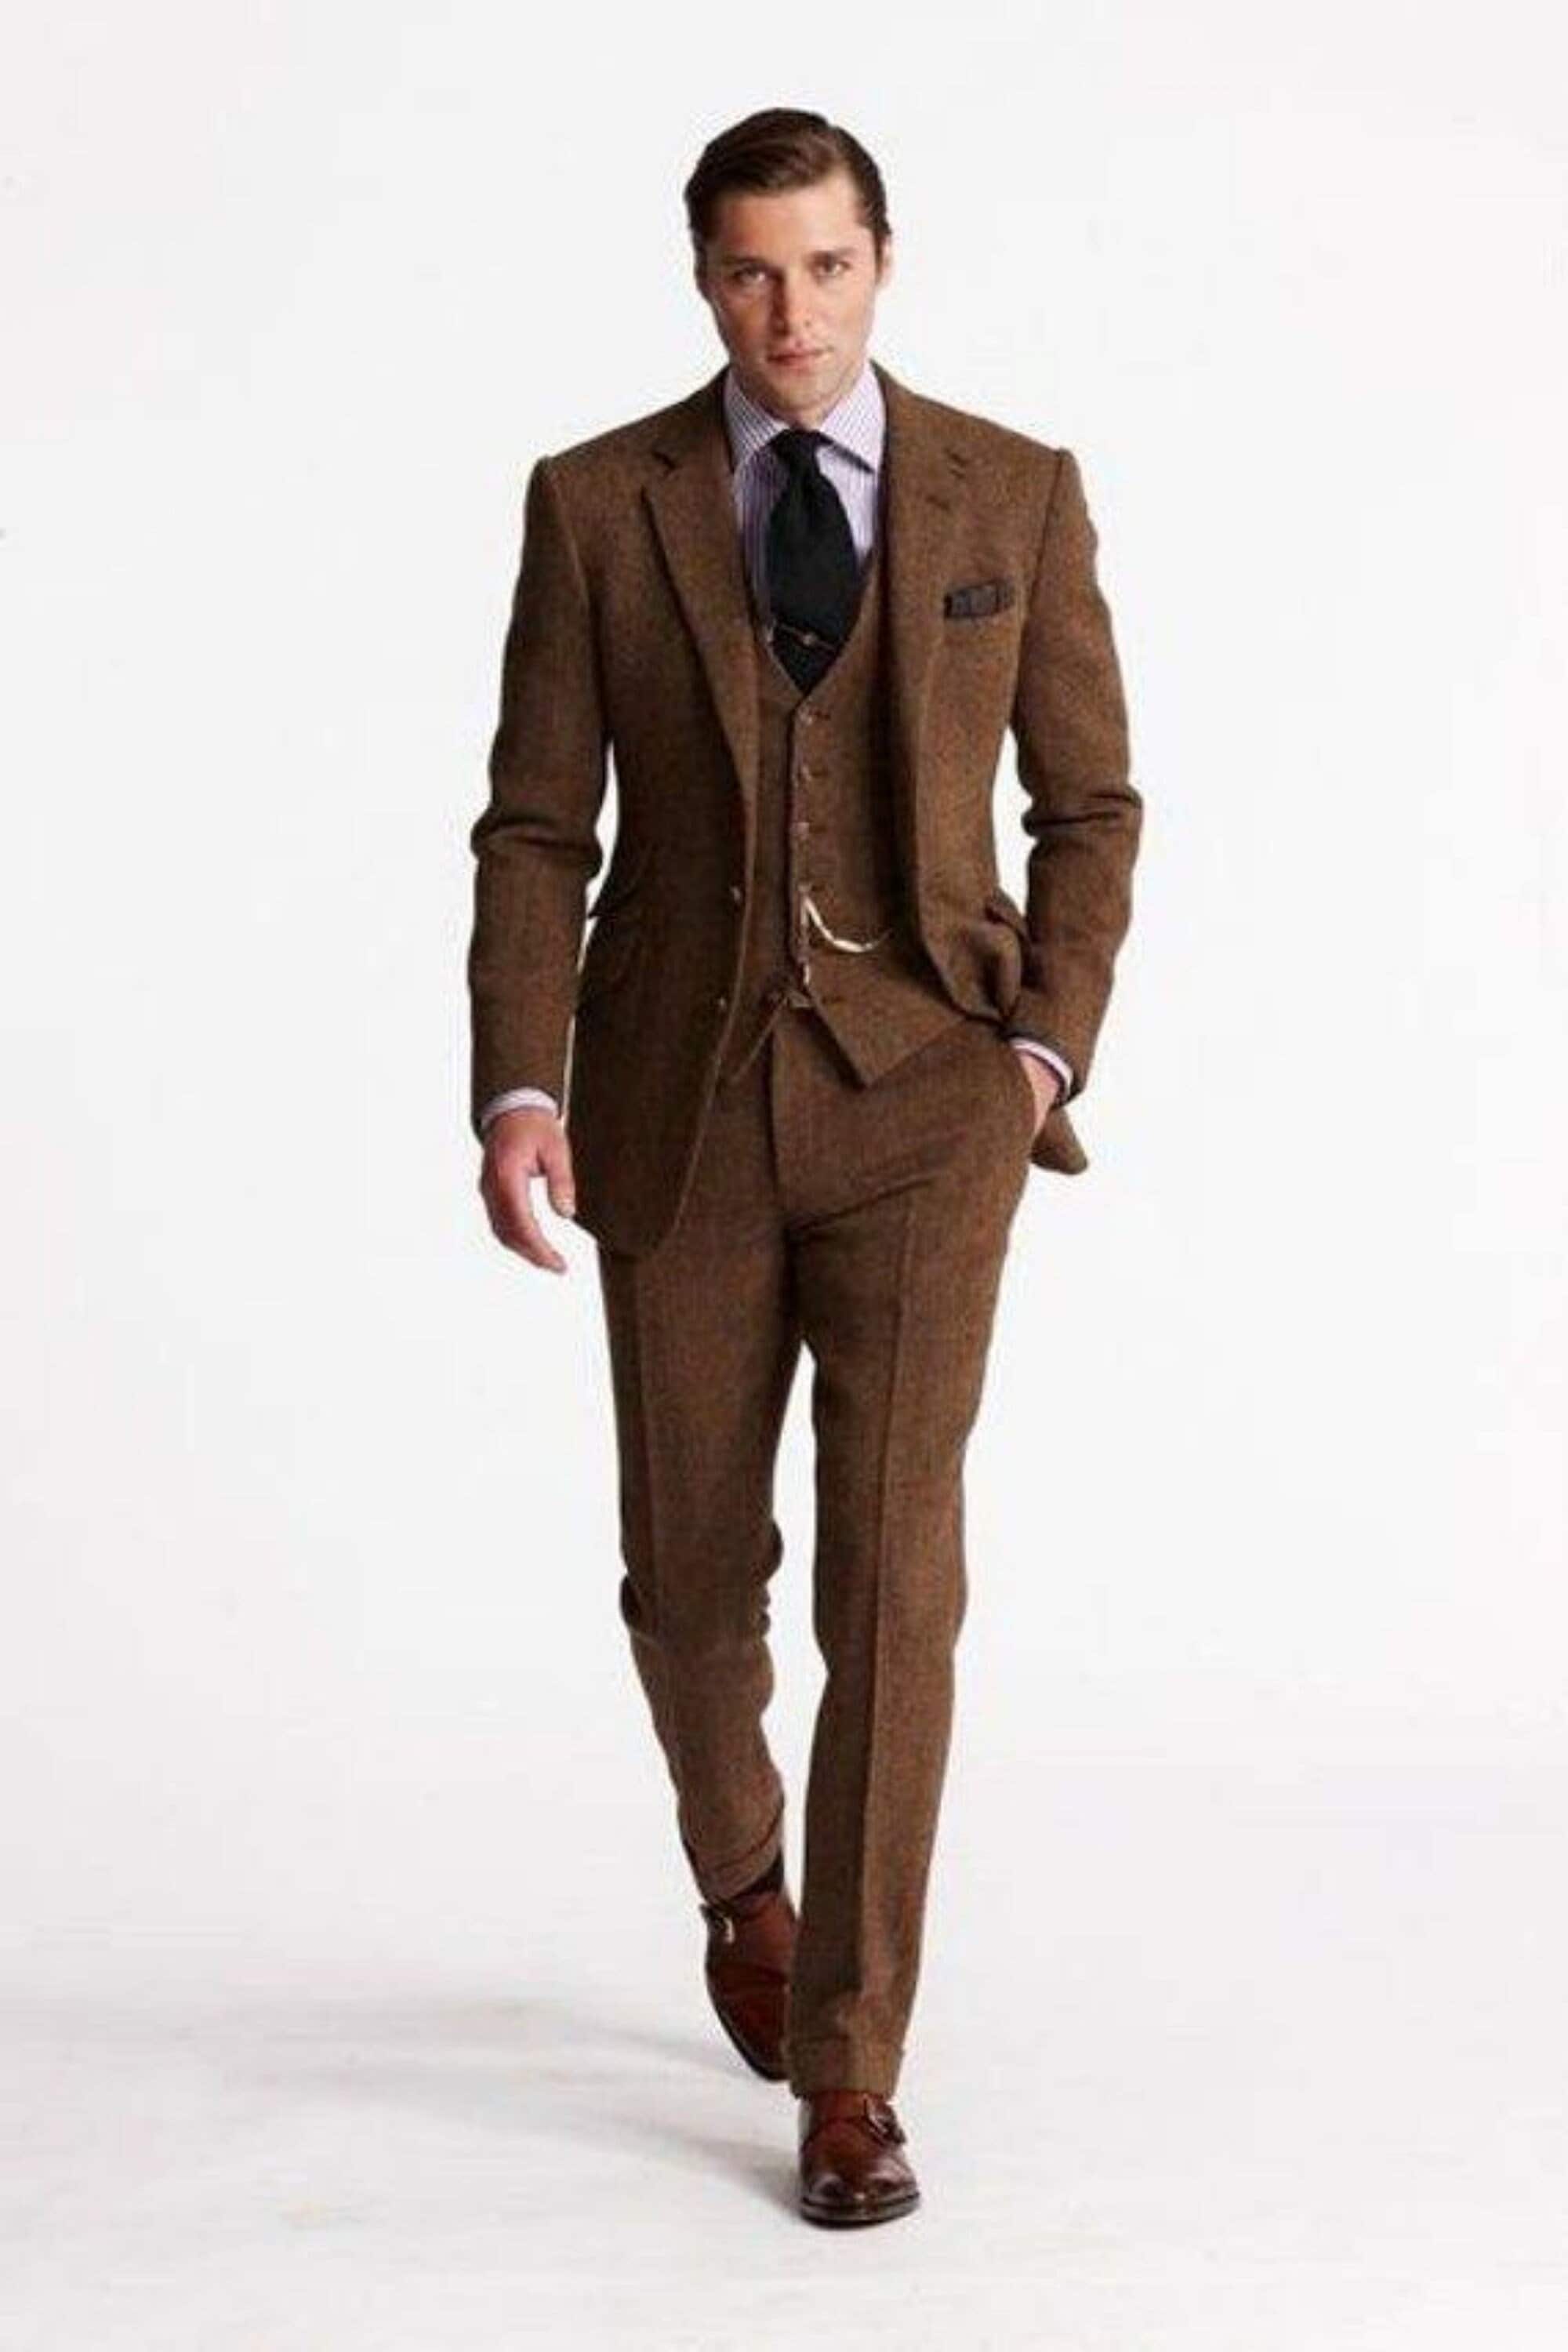 Menista Custom Tweed Wool Three Piece Style Brown Mens Suit for